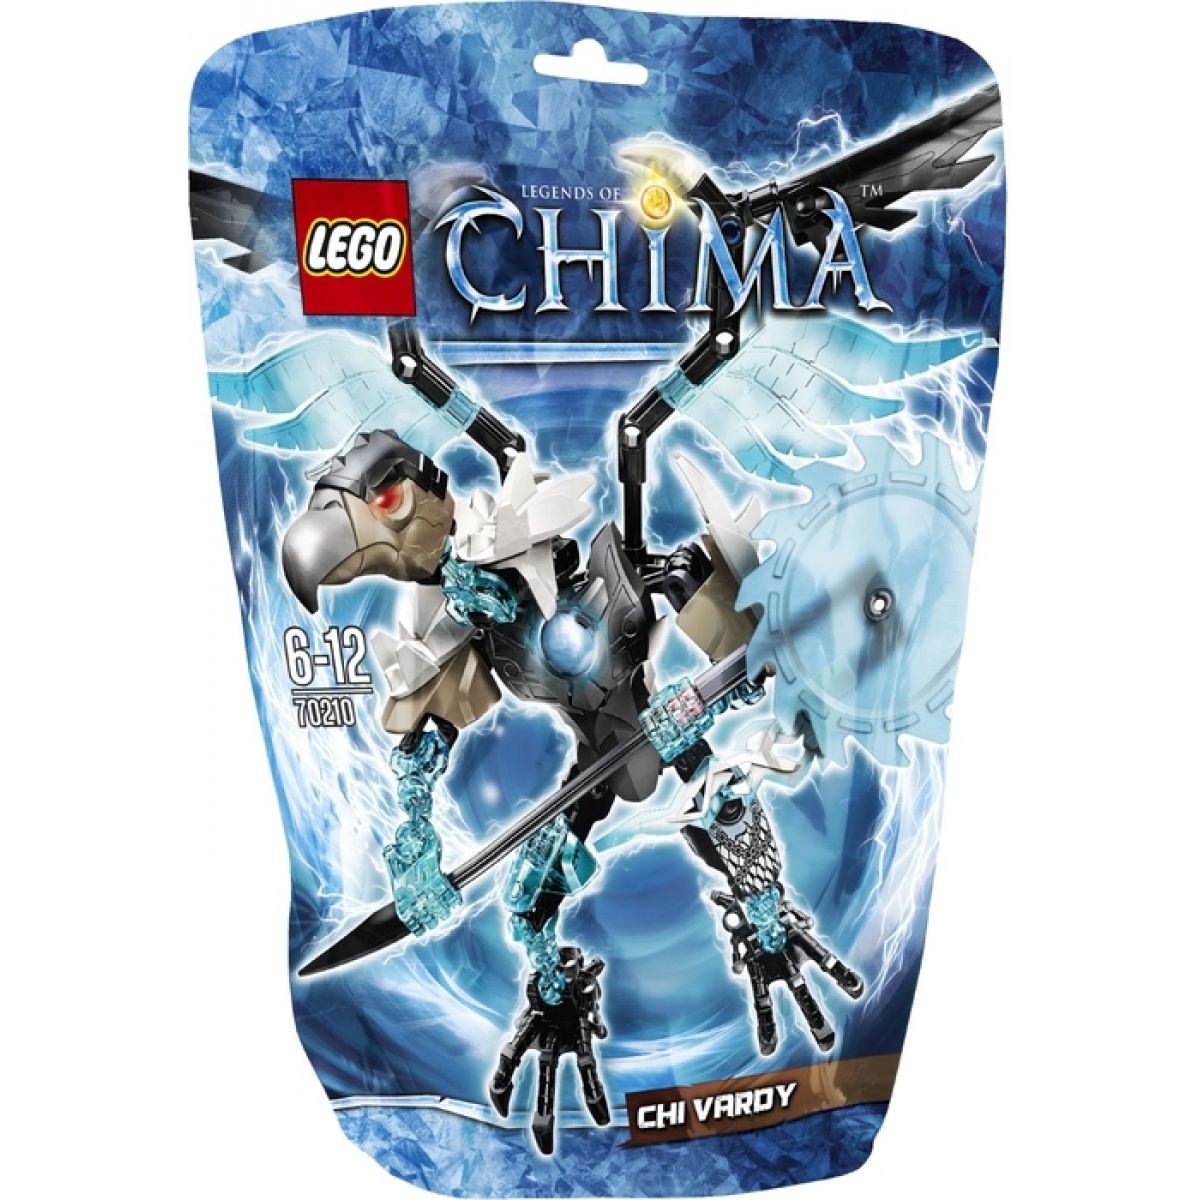 LEGO Chima 70210 Chi Vardy